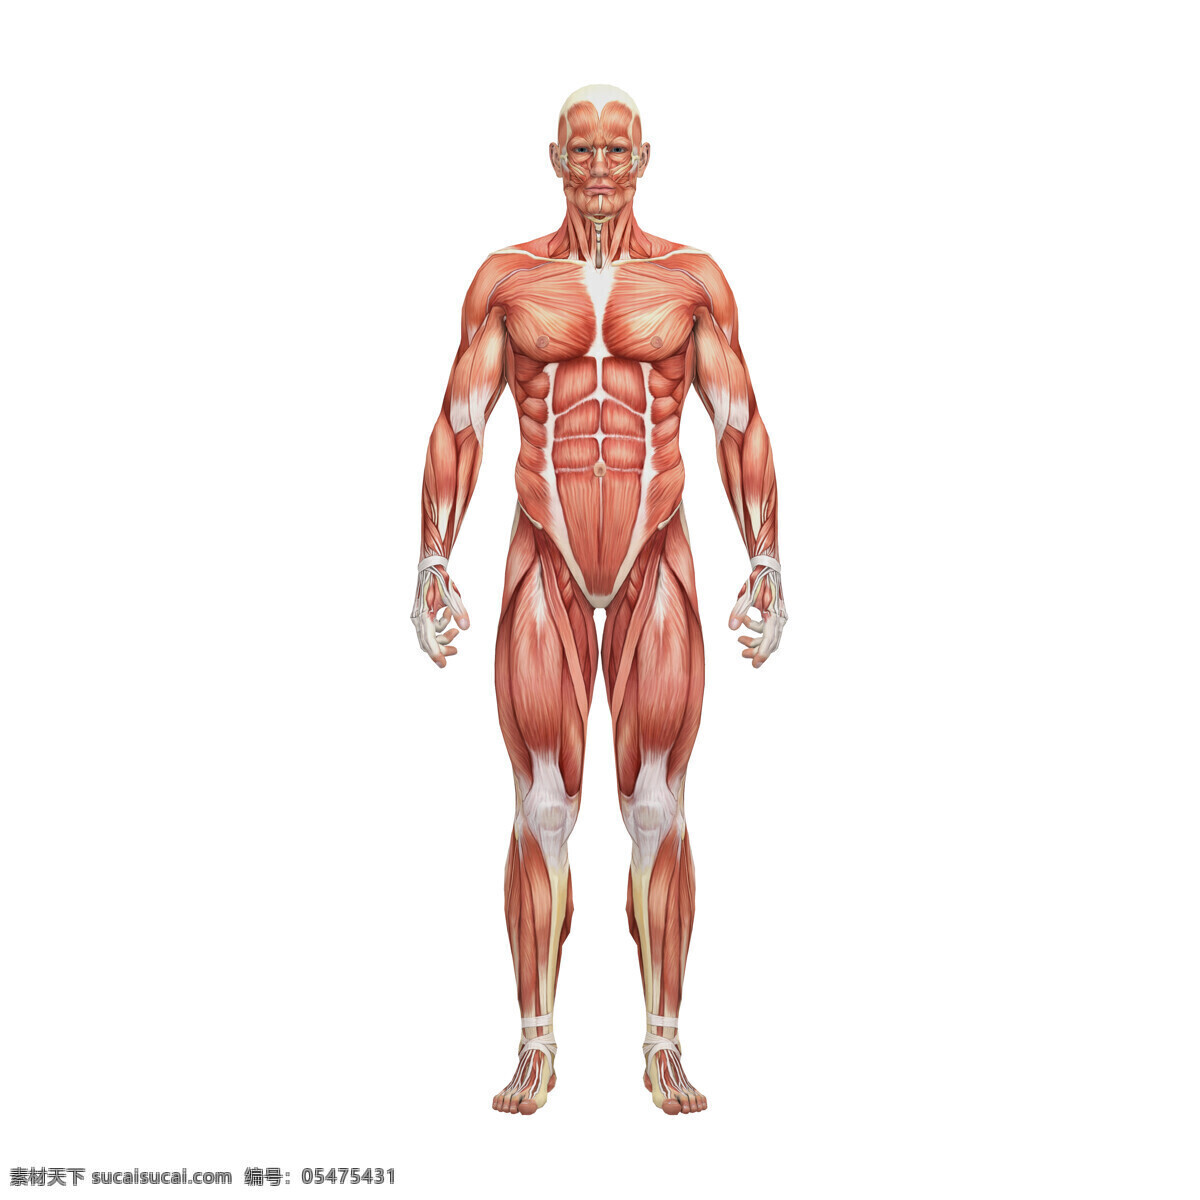 男性 人体 肌肉 组织 人体解剖学 男性人体 肌肉组织图 医学 医疗护理 人体器官图 人物图片